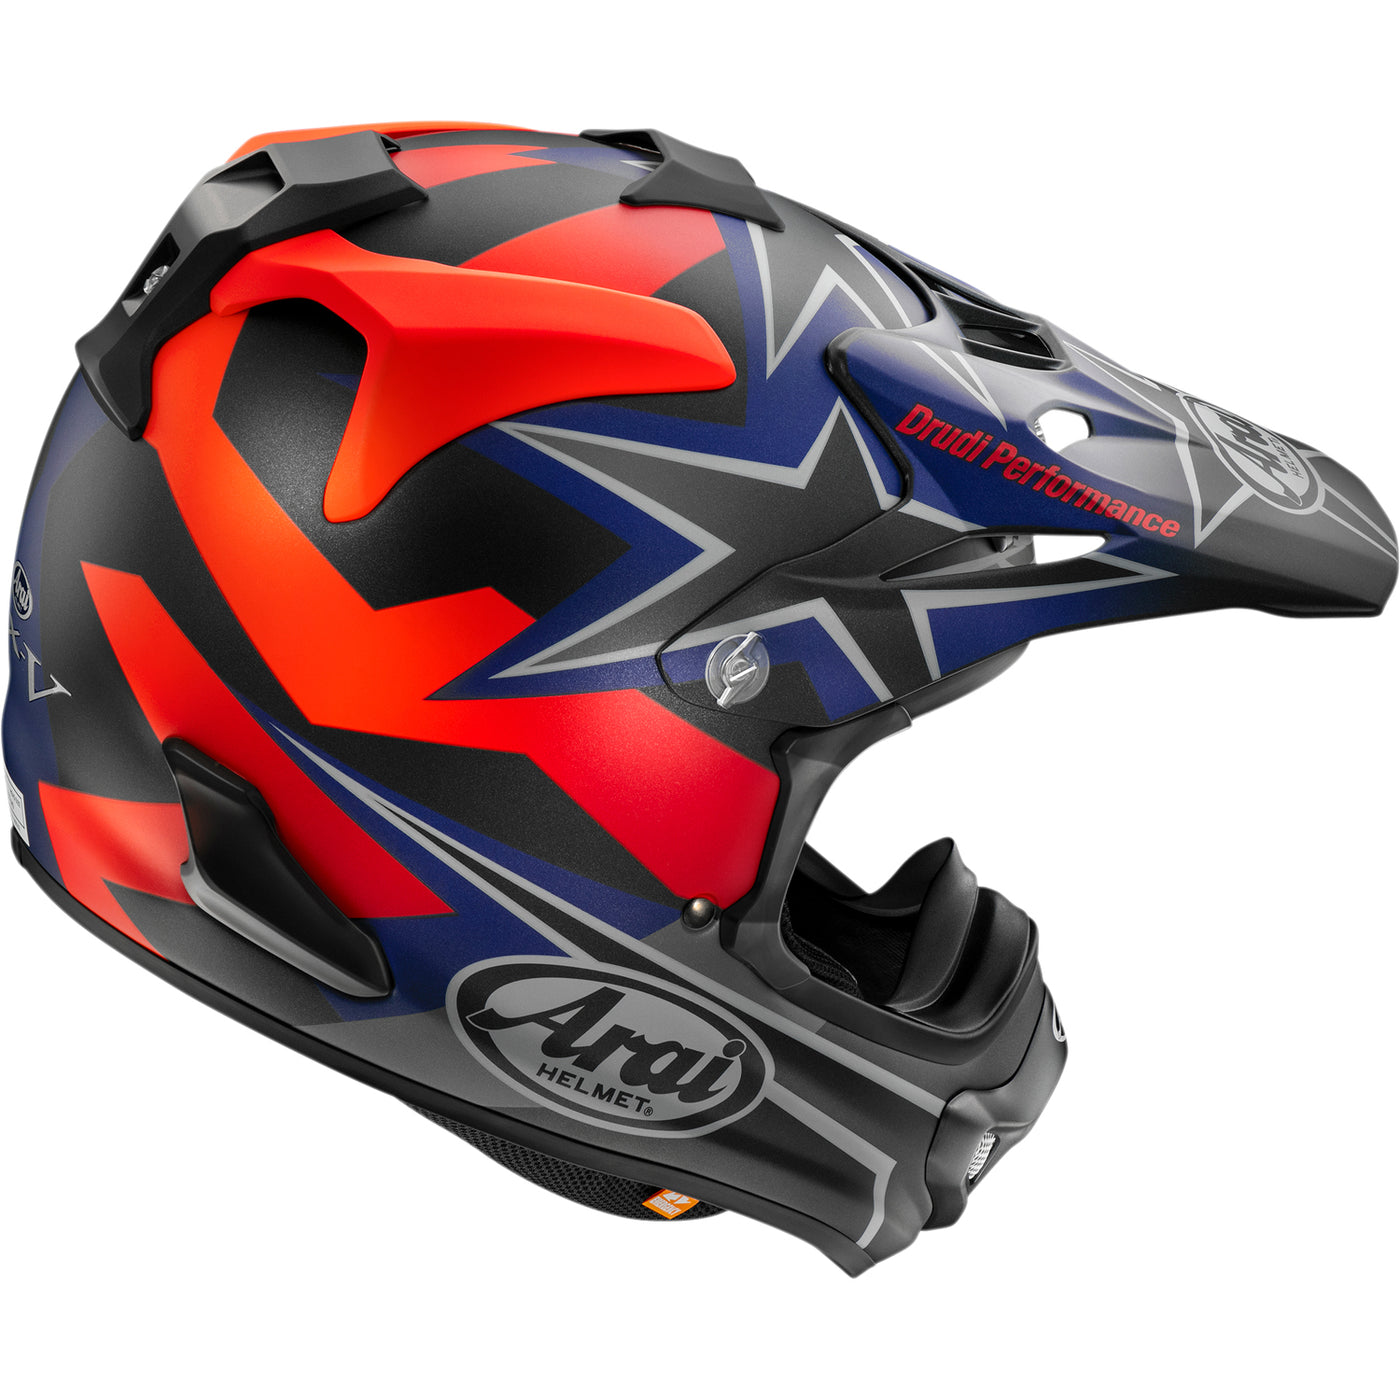 Arai VX-Pro4 Stars & Stripes Helmet